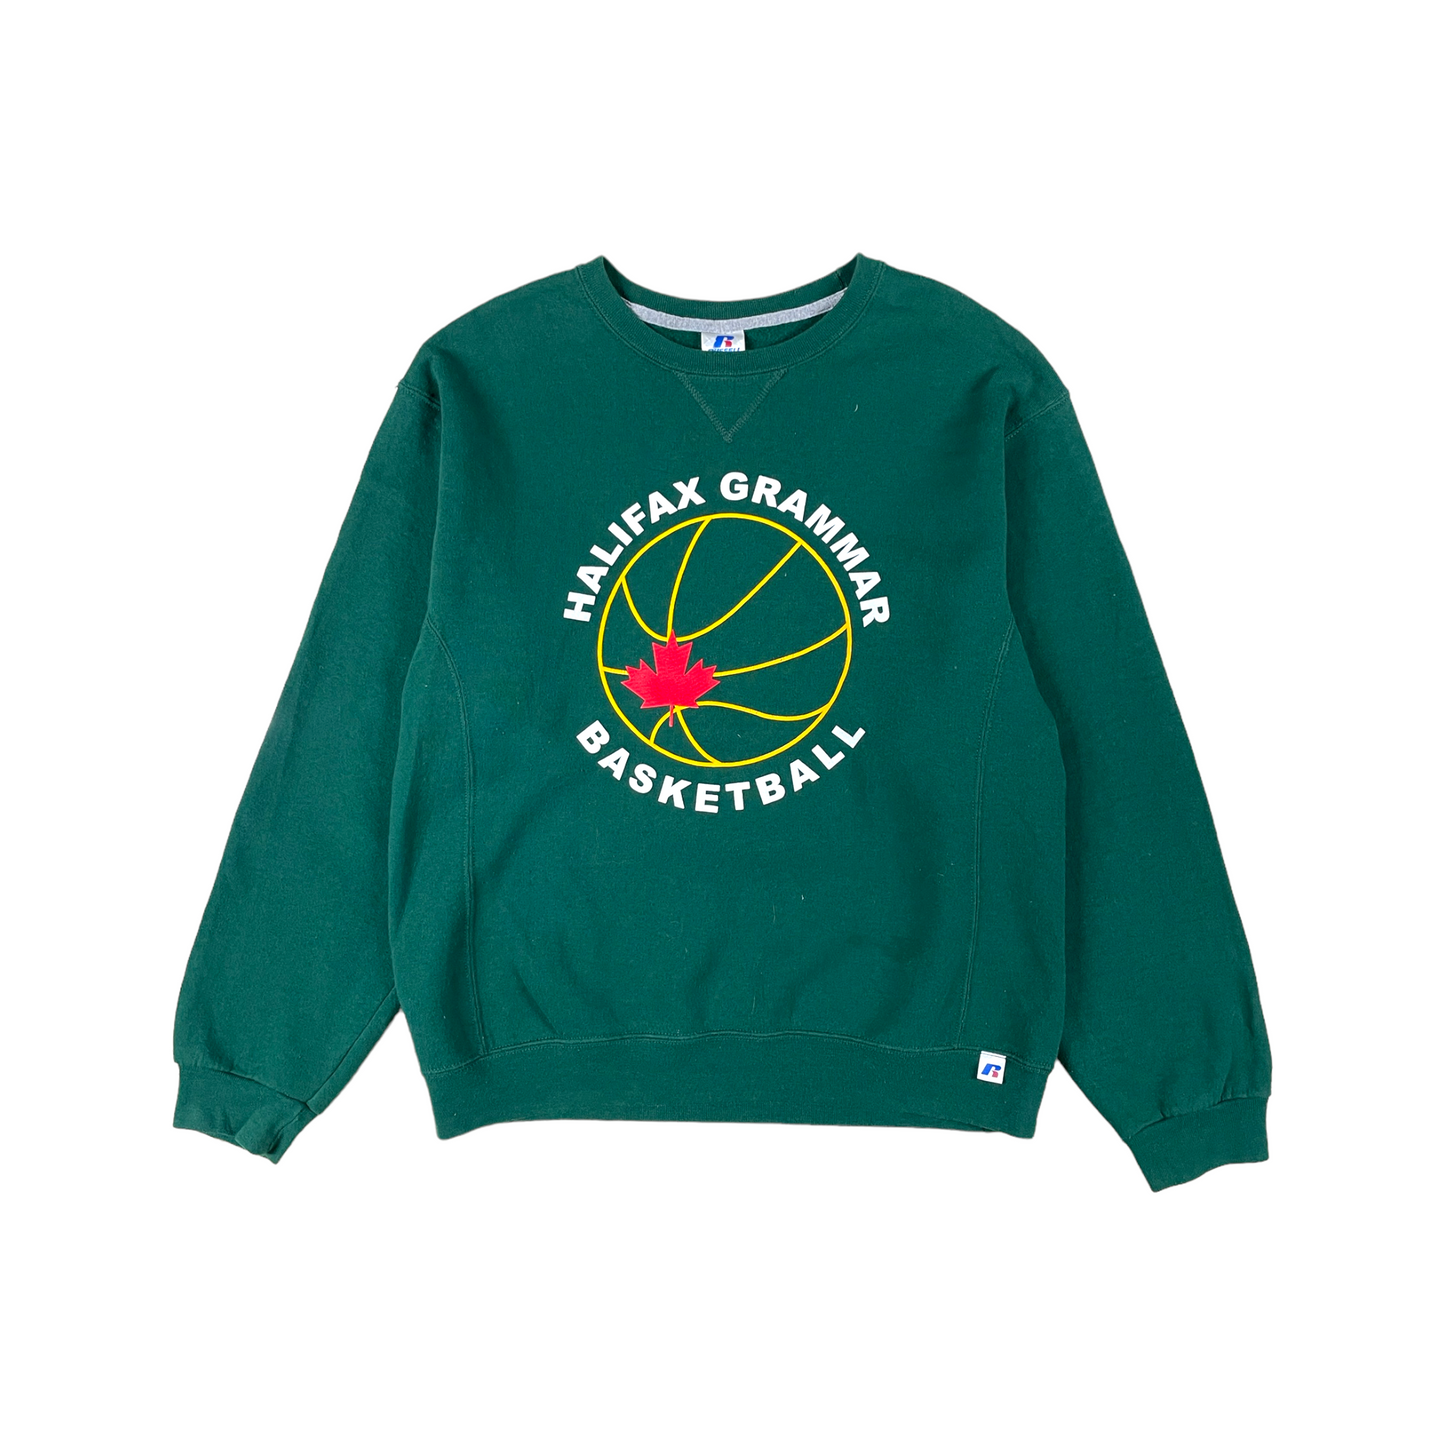 Halifax Basketball Sweatshirt